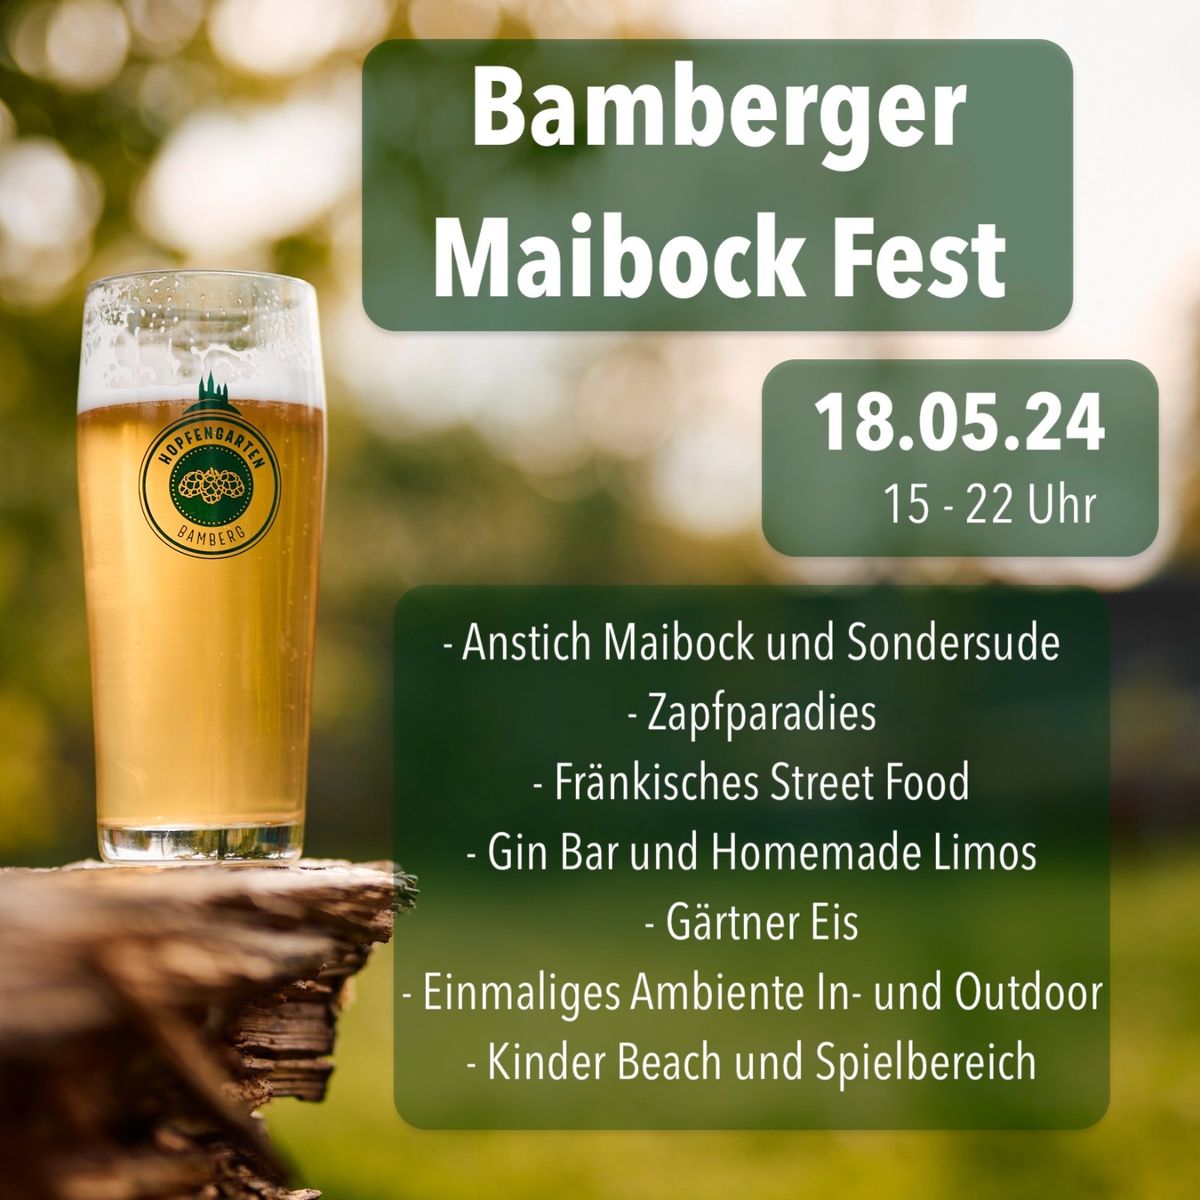 Bamberger Mai Bock Fest